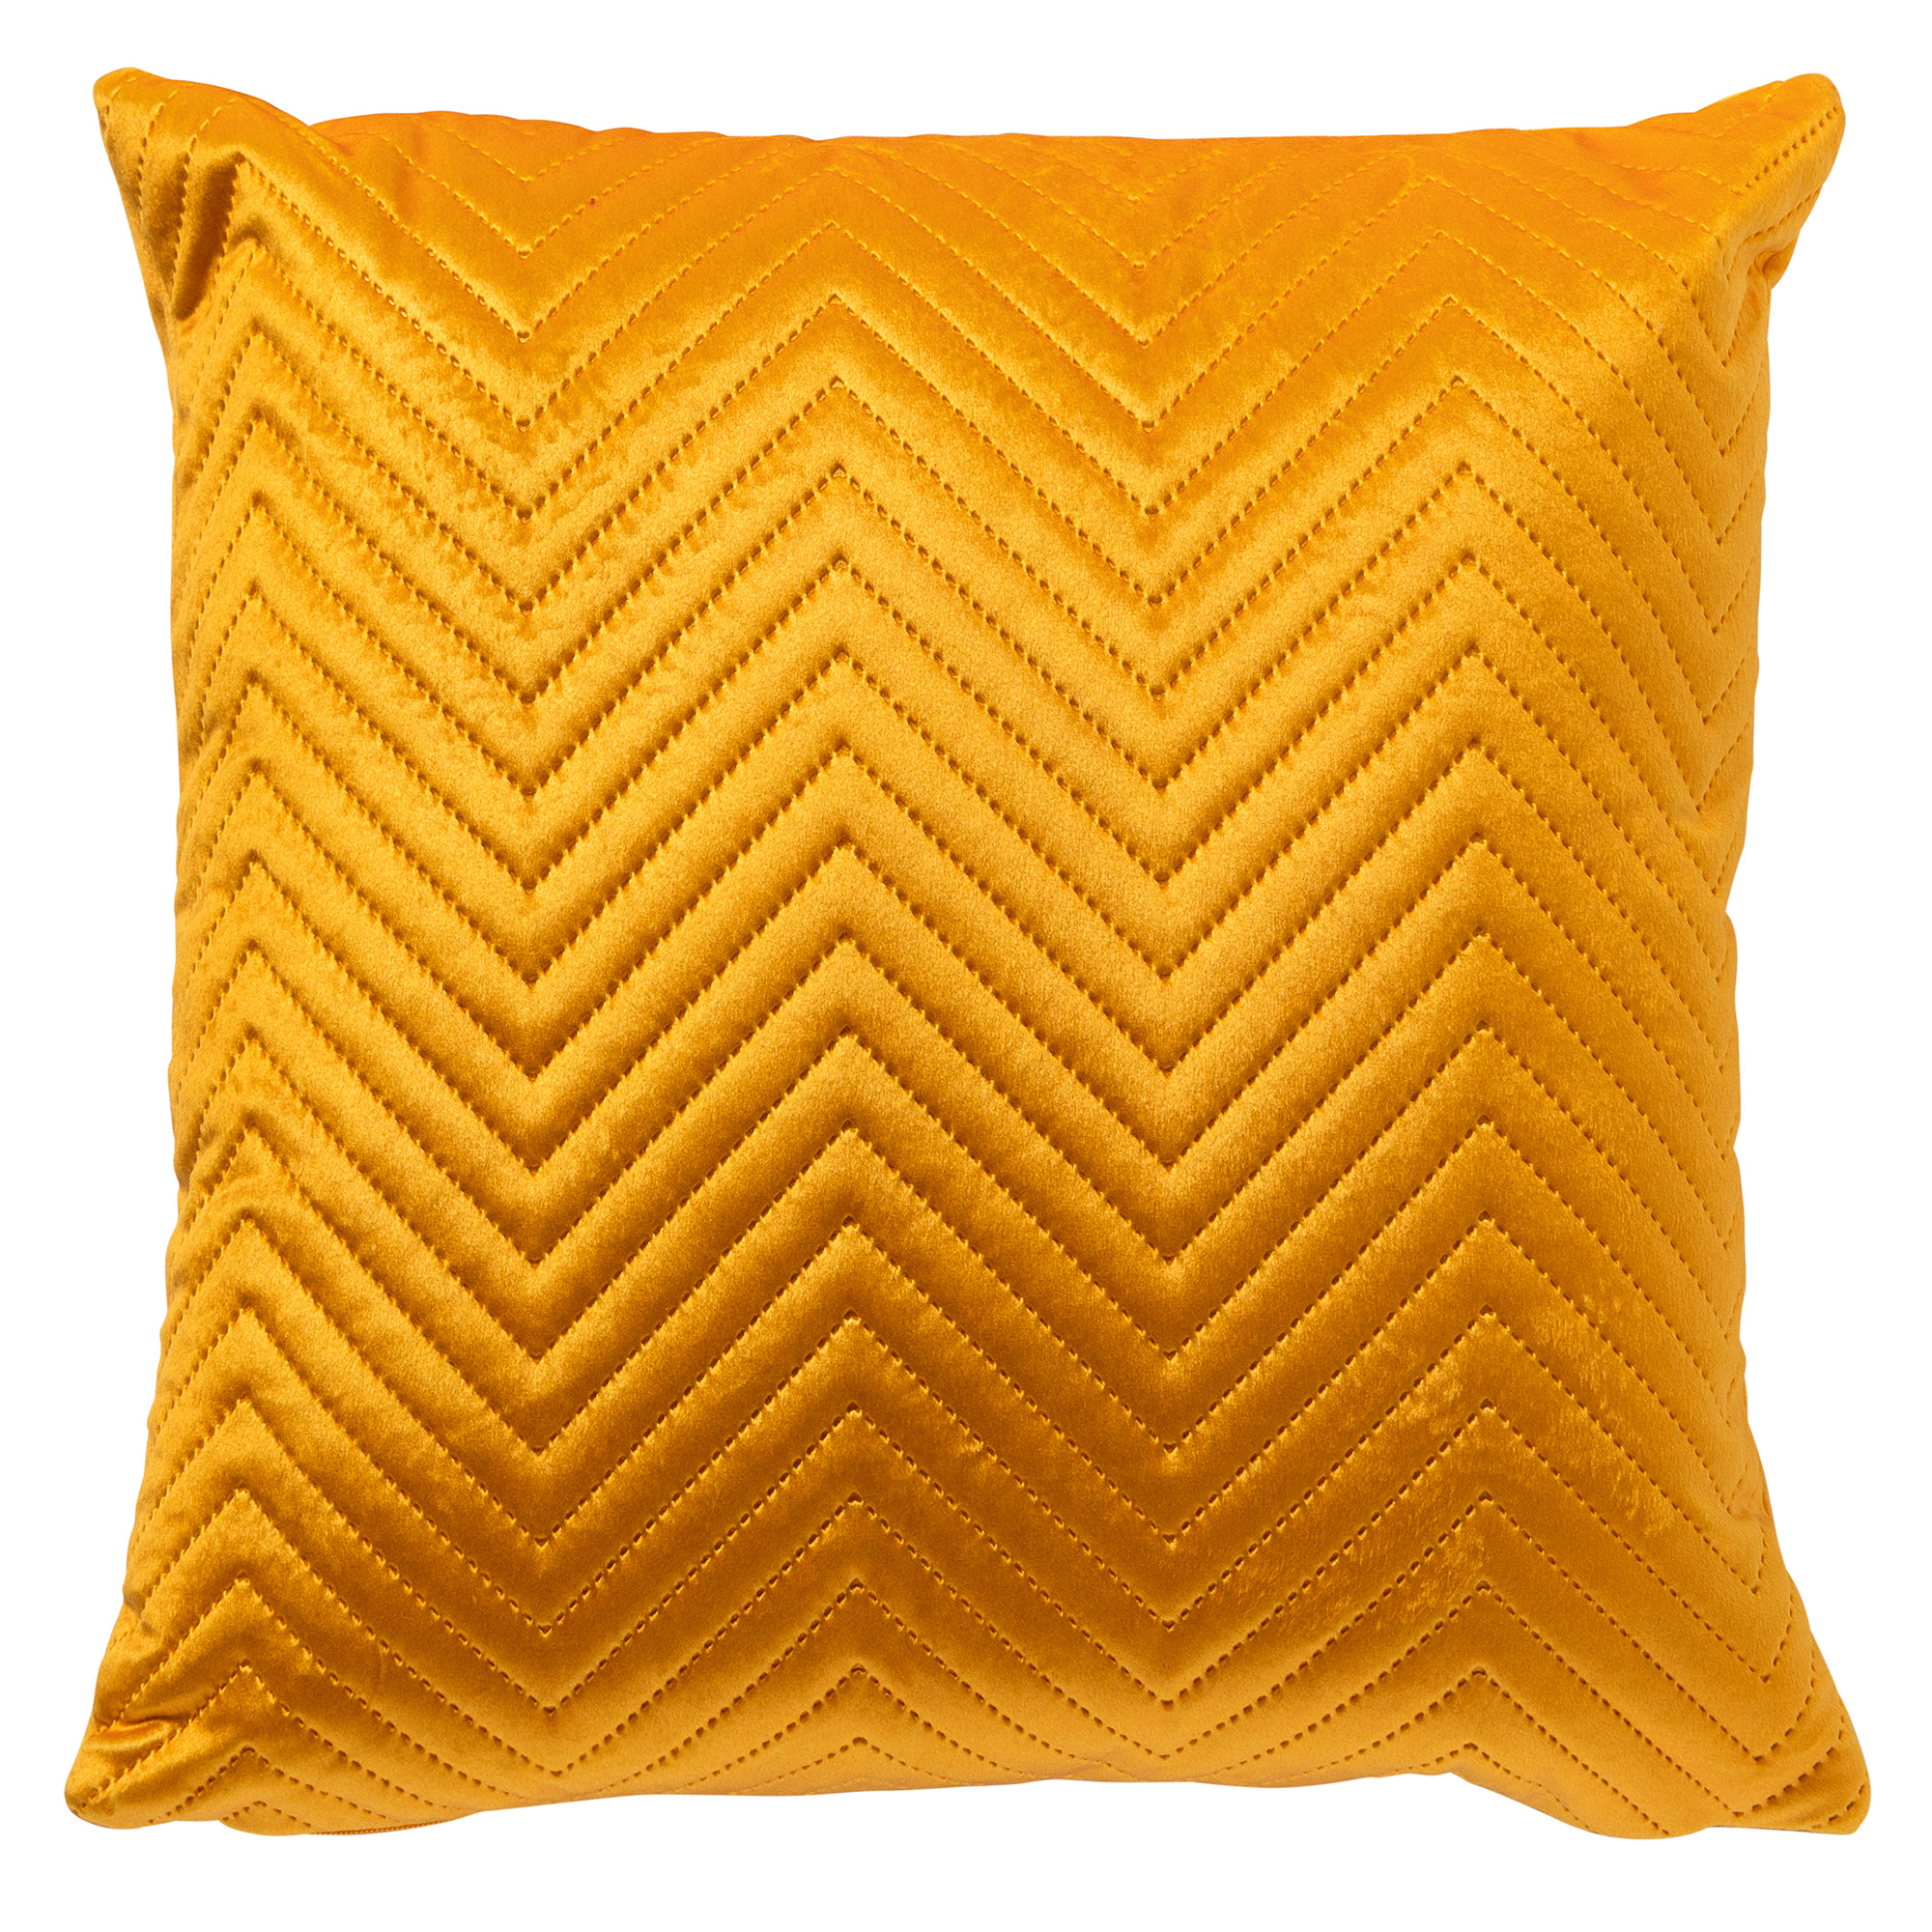 DUKE - Kussenhoes 40x40 cm - voorzien van subtiel geometrisch patroon - Golden Glow - geel